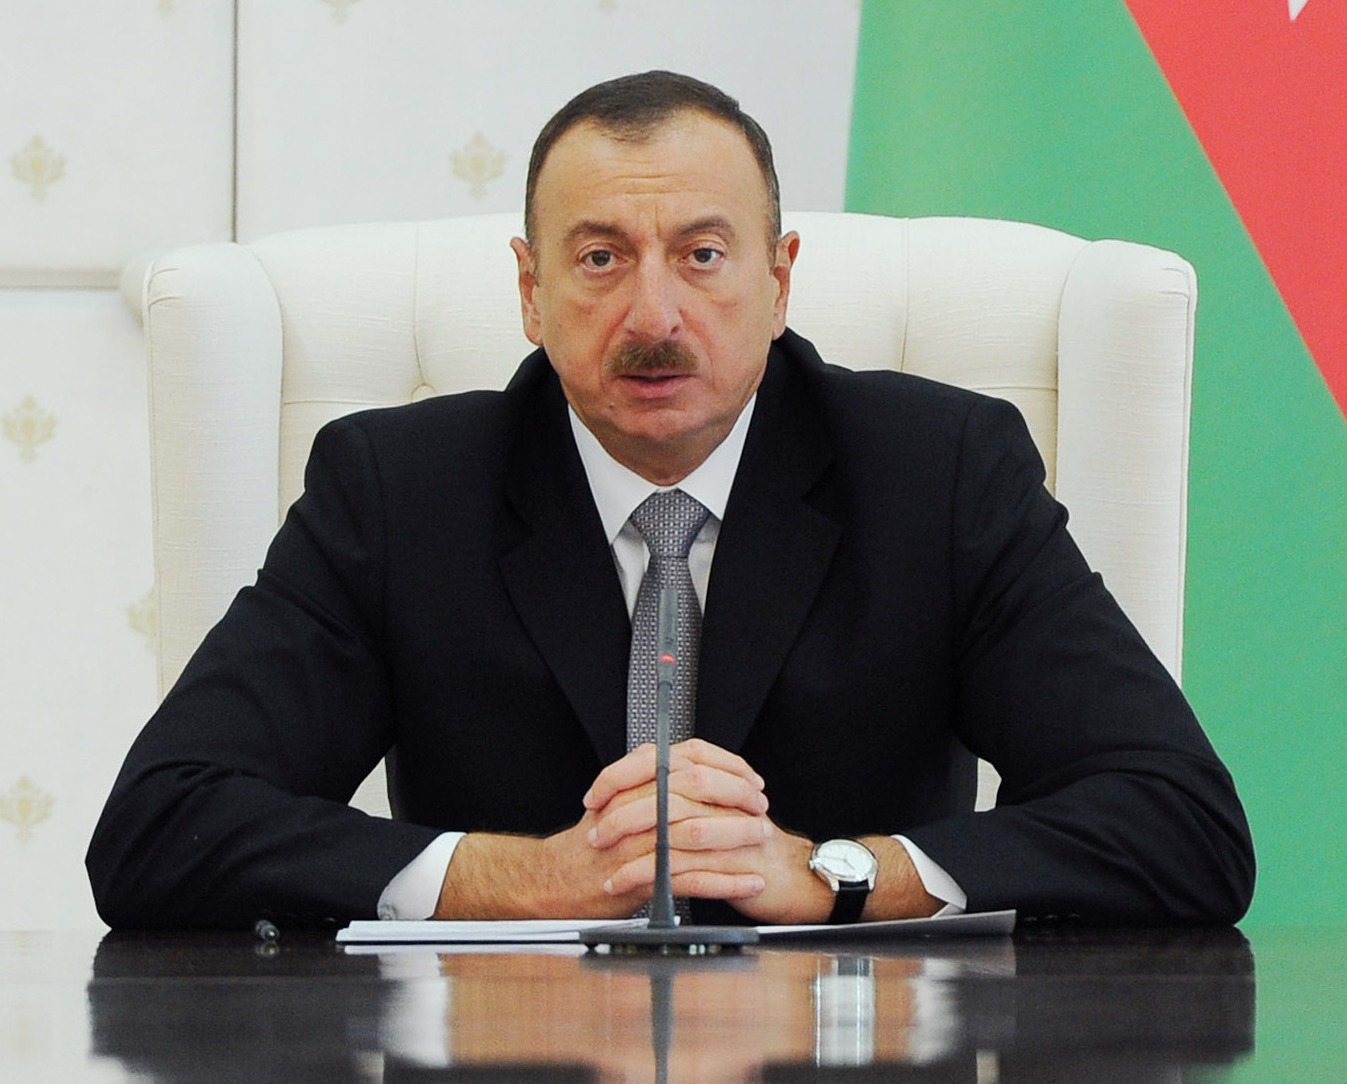 Ильхам Алиев: “Я поручил снести одну из вилл”